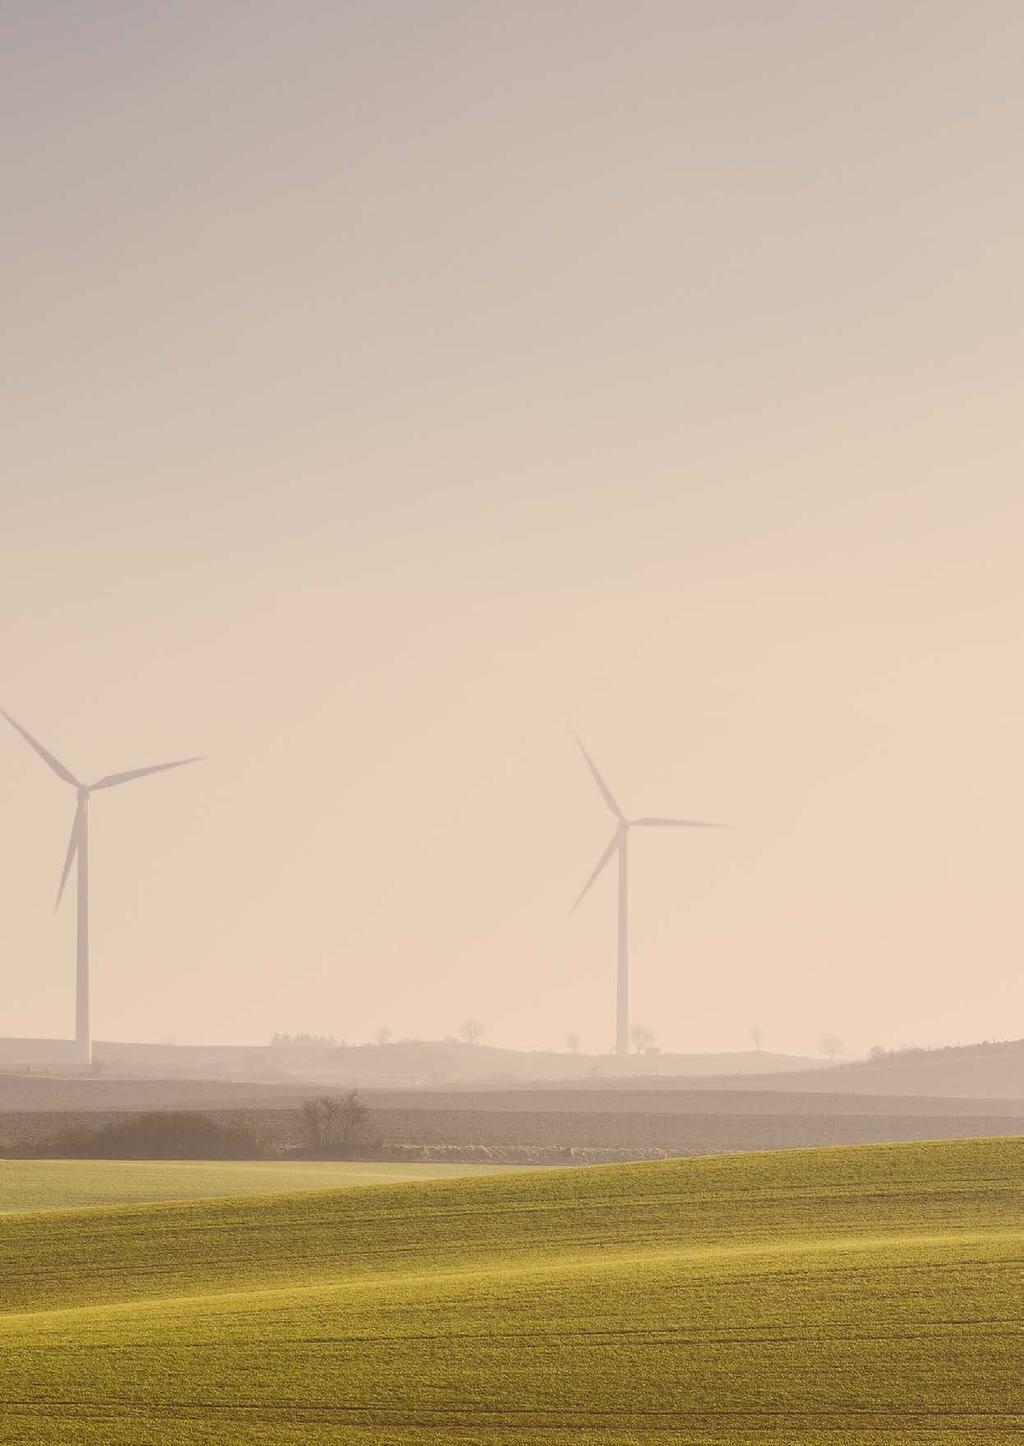 Nätverket för vindbruk Energimyndigheten arbetar för ett hållbart energisystem som är tryggt, konkurrenskraftigt och har låg negativ påverkan på hälsa, miljö samt klimat.